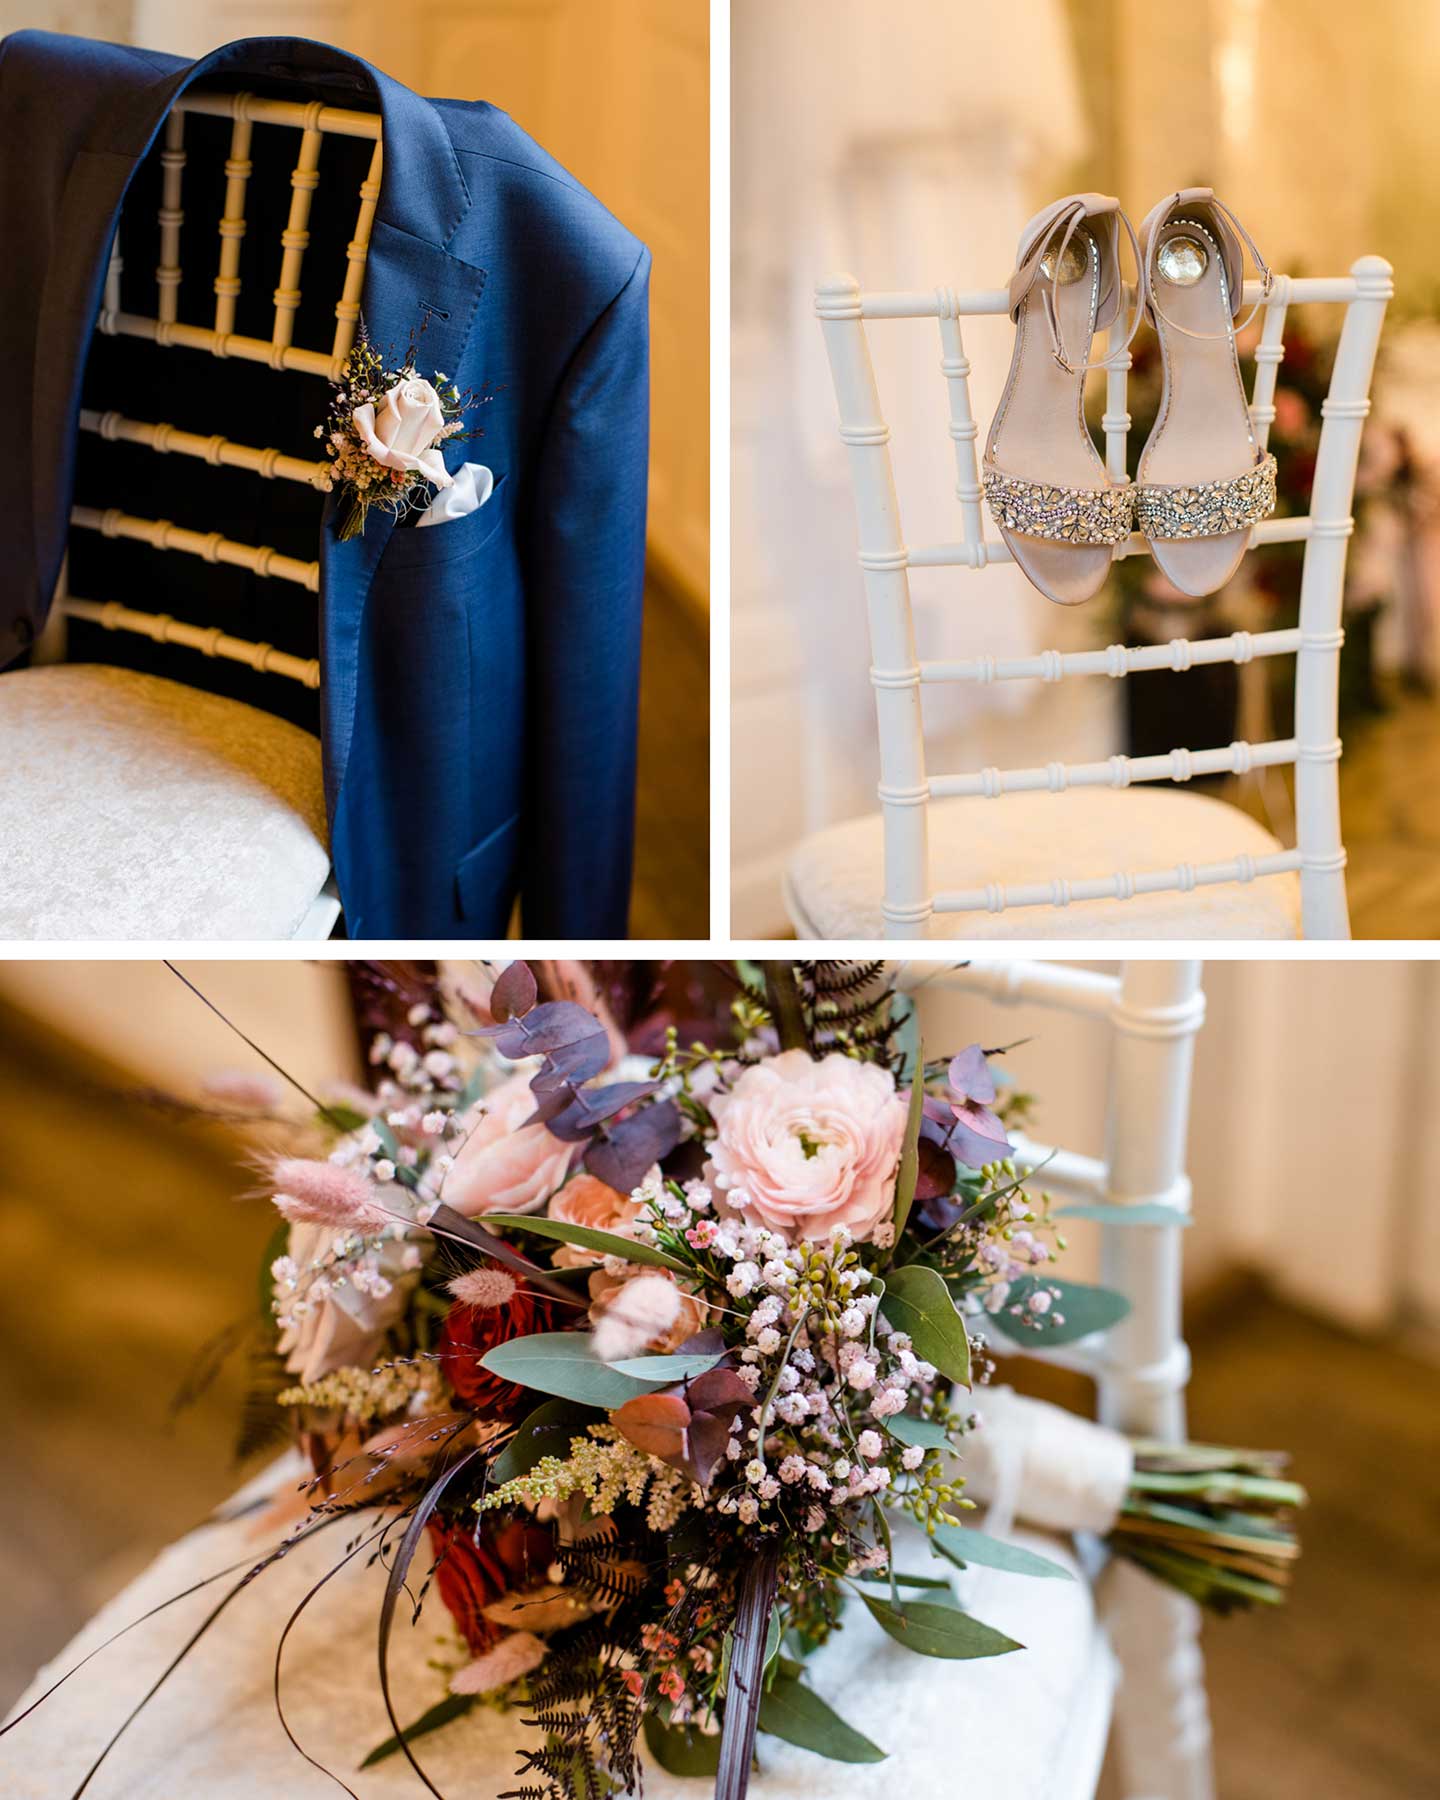 Brautstrauß, Hochzeitsschuhe und Ansteckblume liegen bereit für die Modern Romantic Wedding.